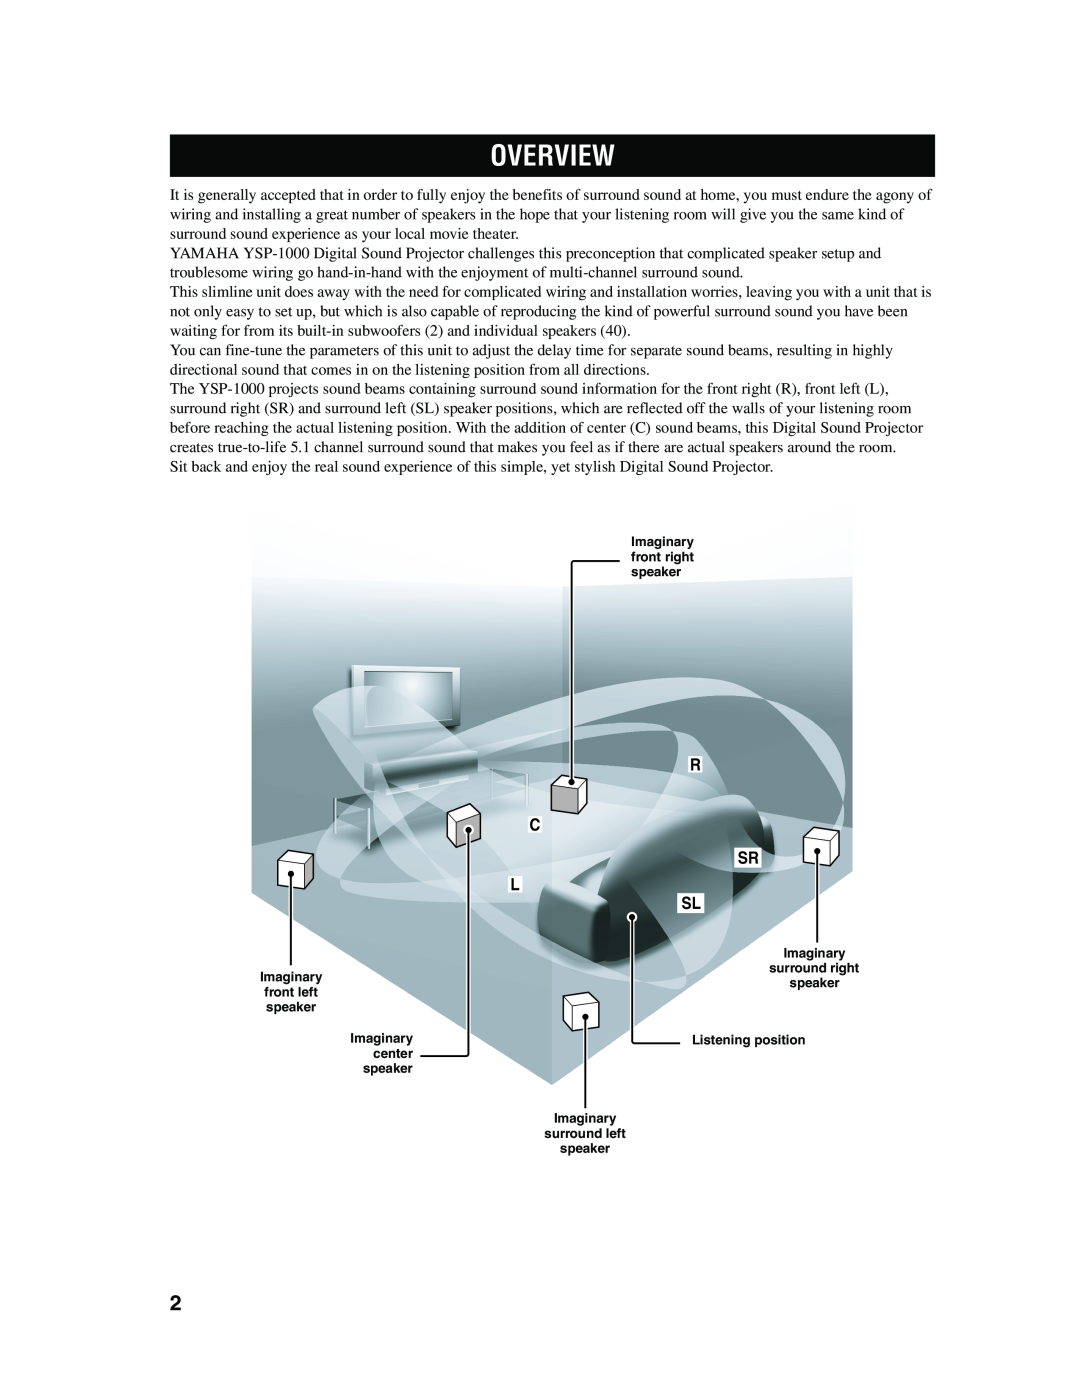 Yamaha YSP-1000 owner manual Overview, R C Sr L Sl 